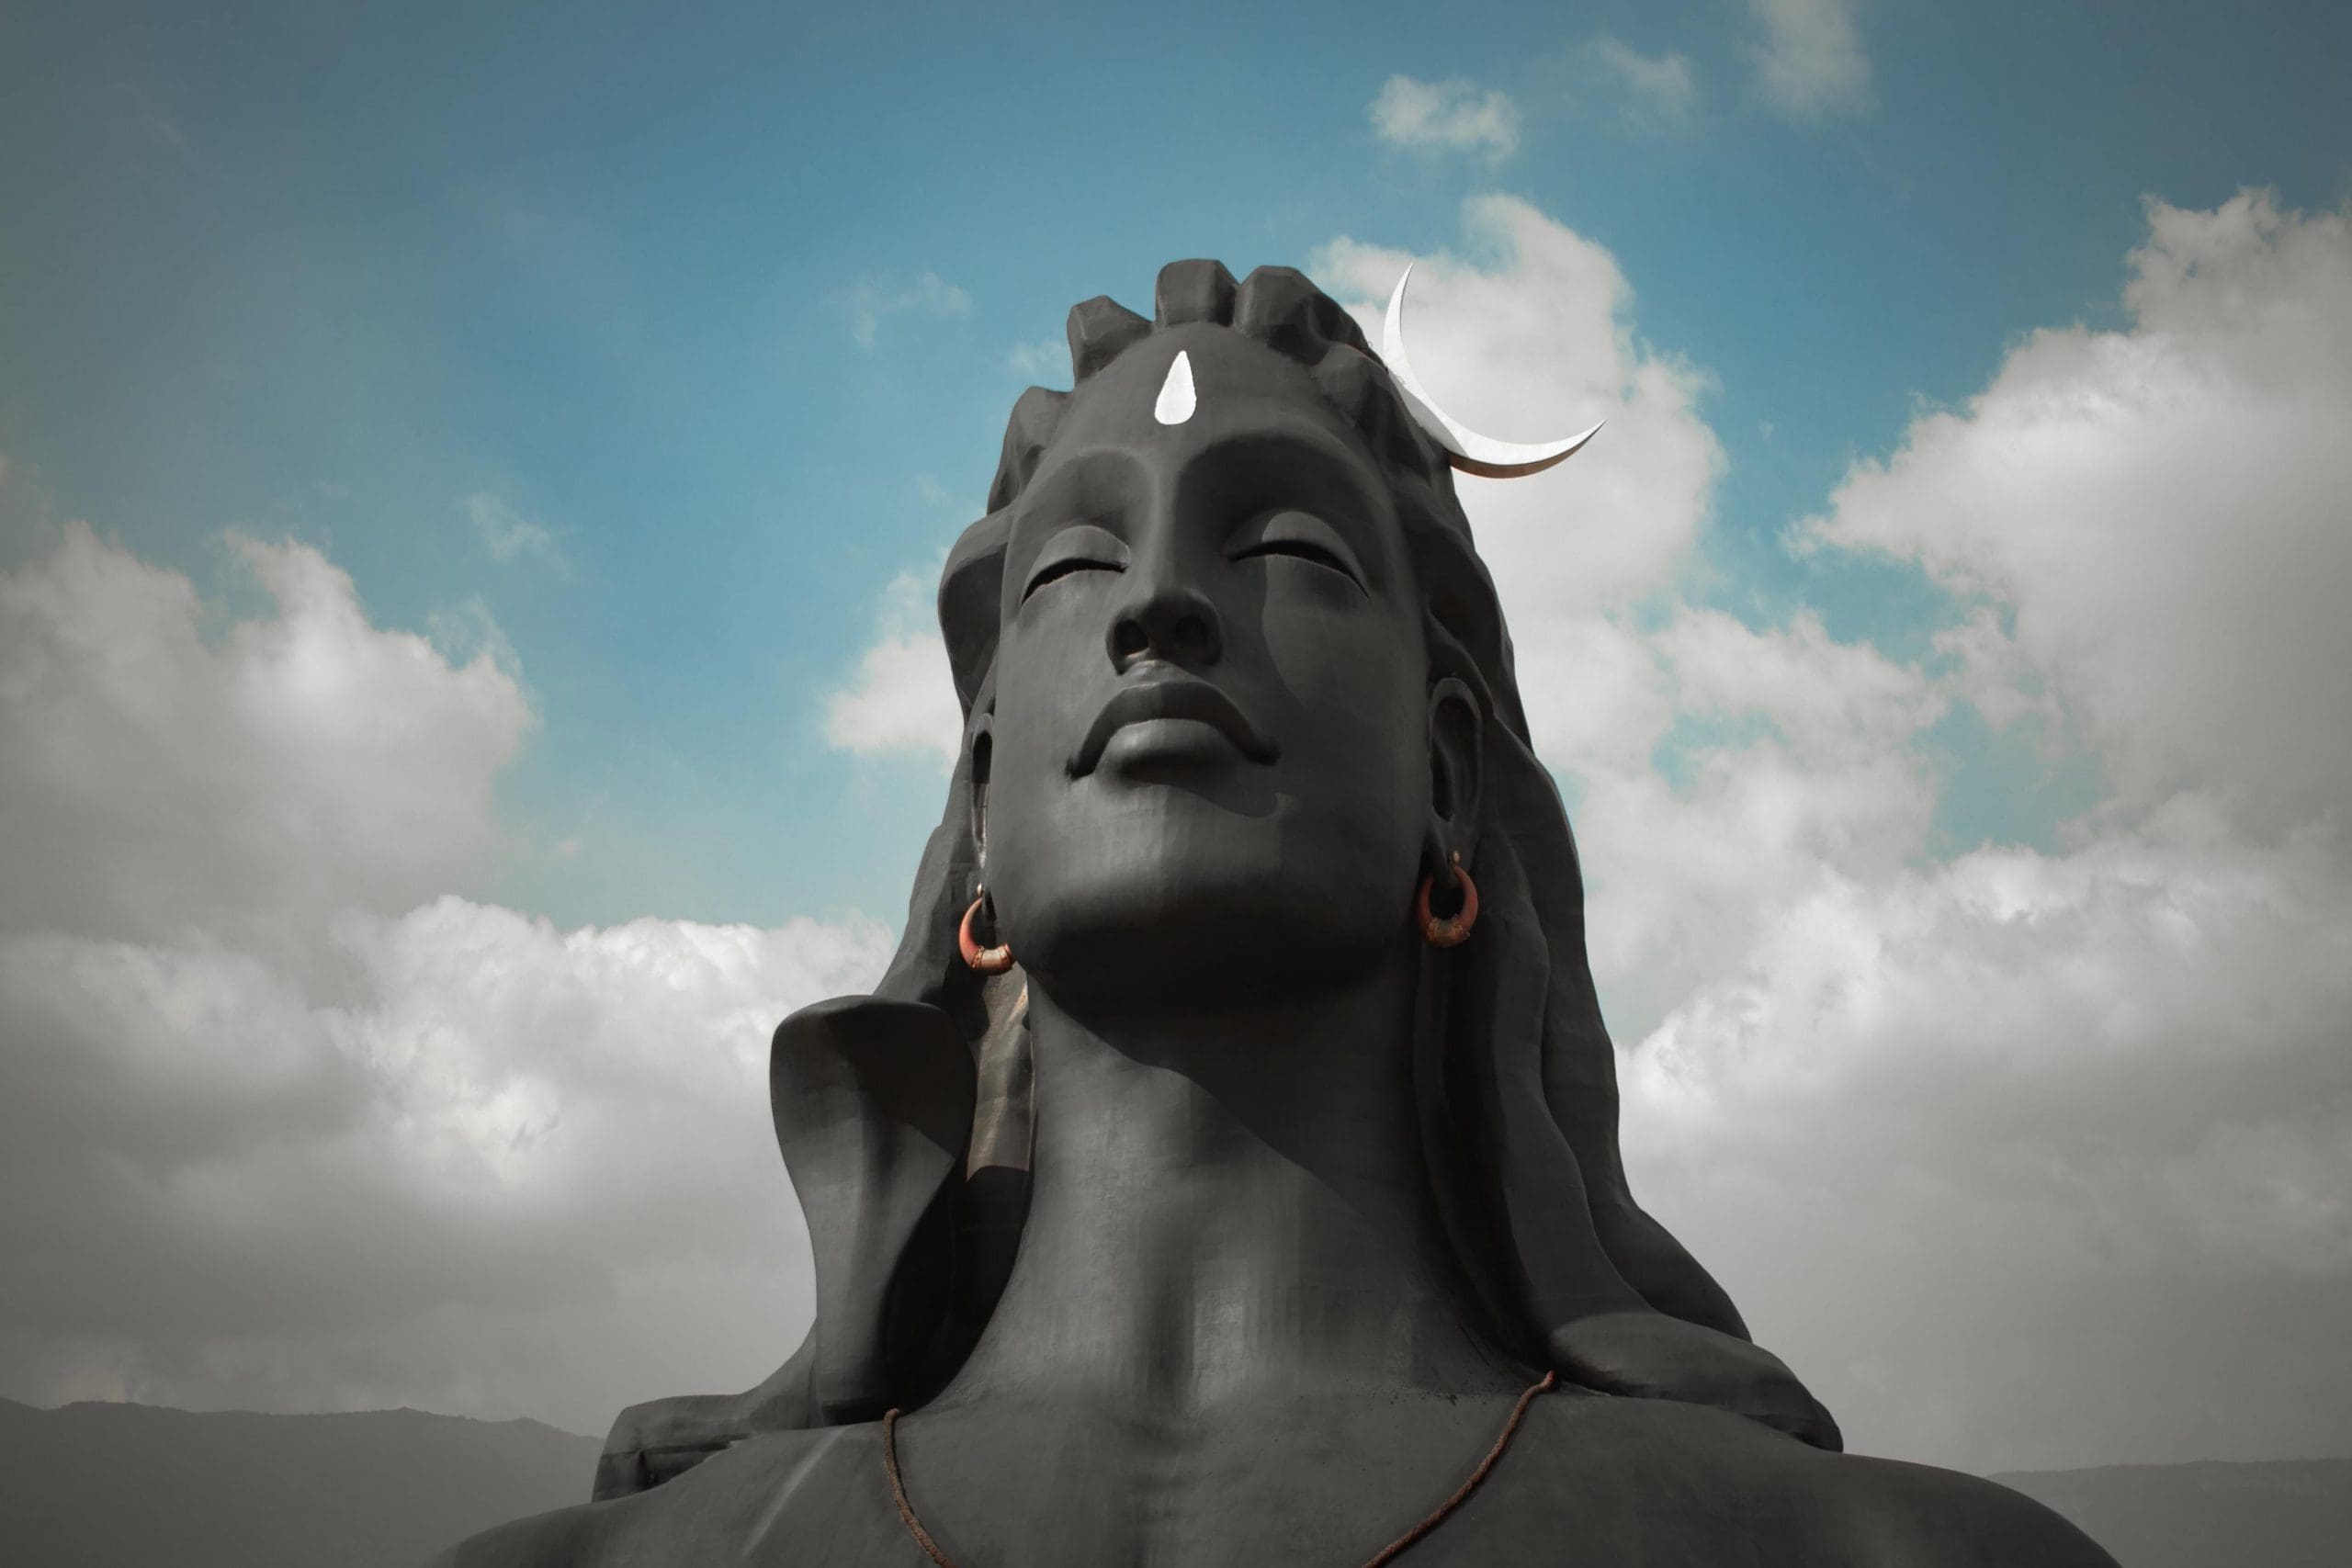 This Shravan, visit Adiyogi Shiva Statue In Coimbatore | NewsTrack English 1